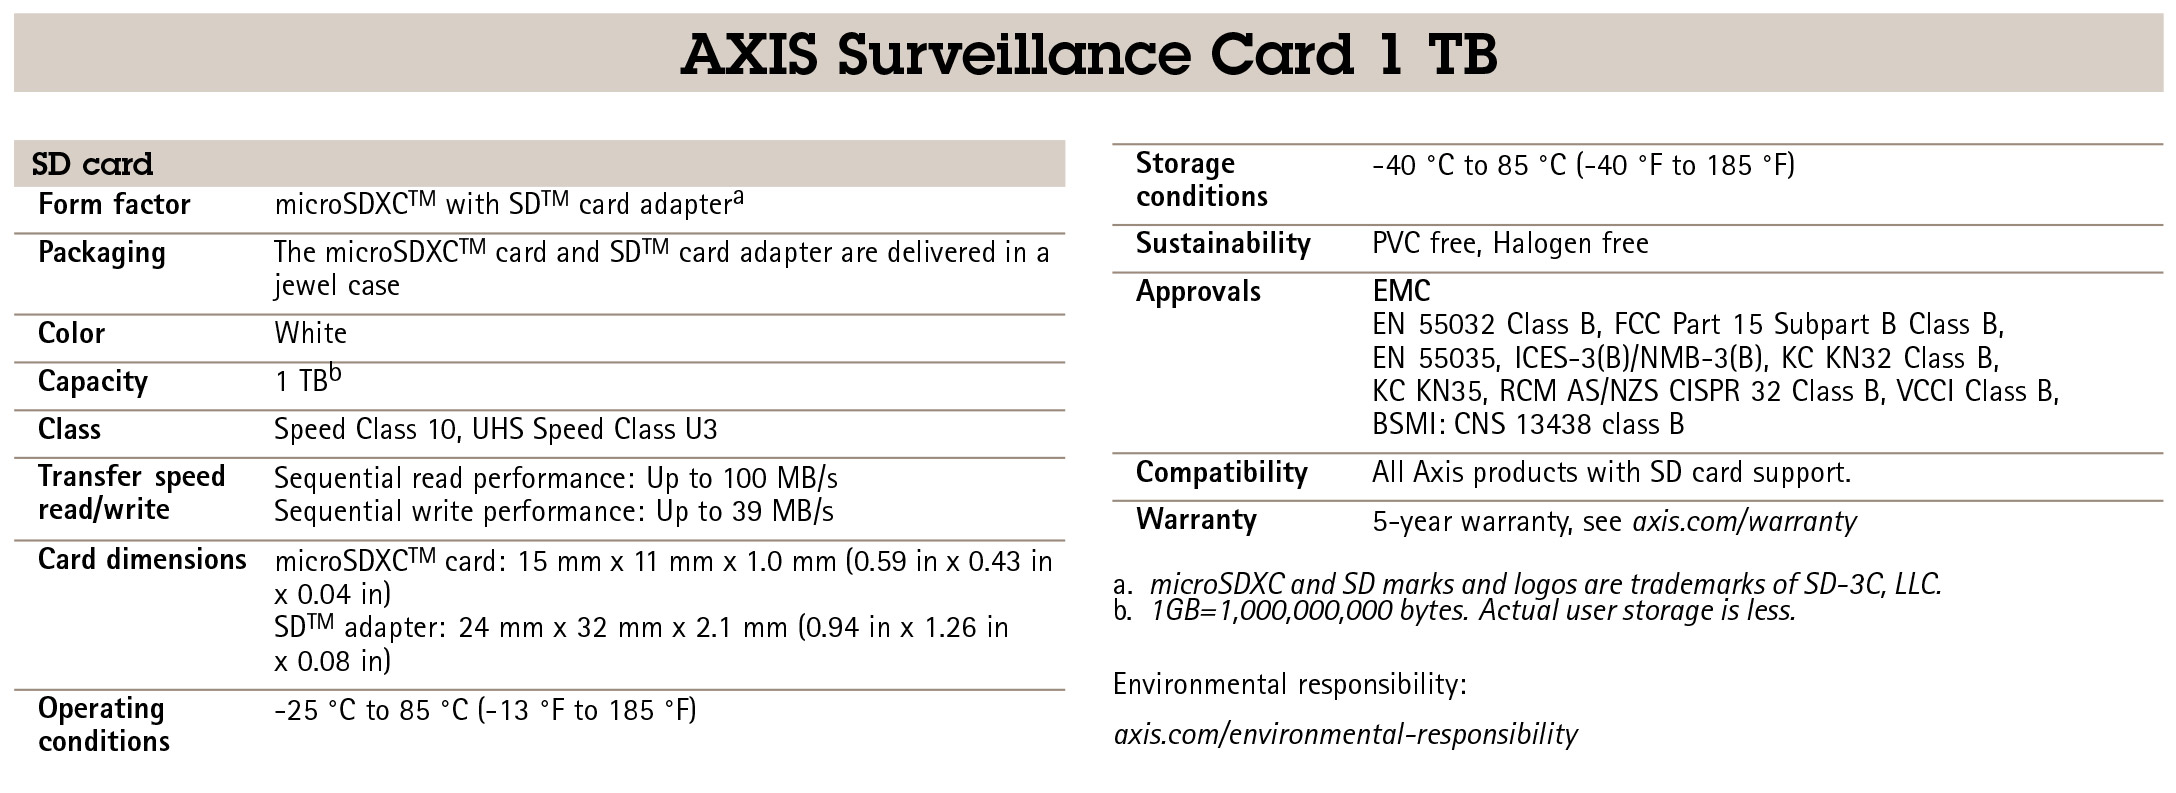 AXIS Surveillance Card 1 TB